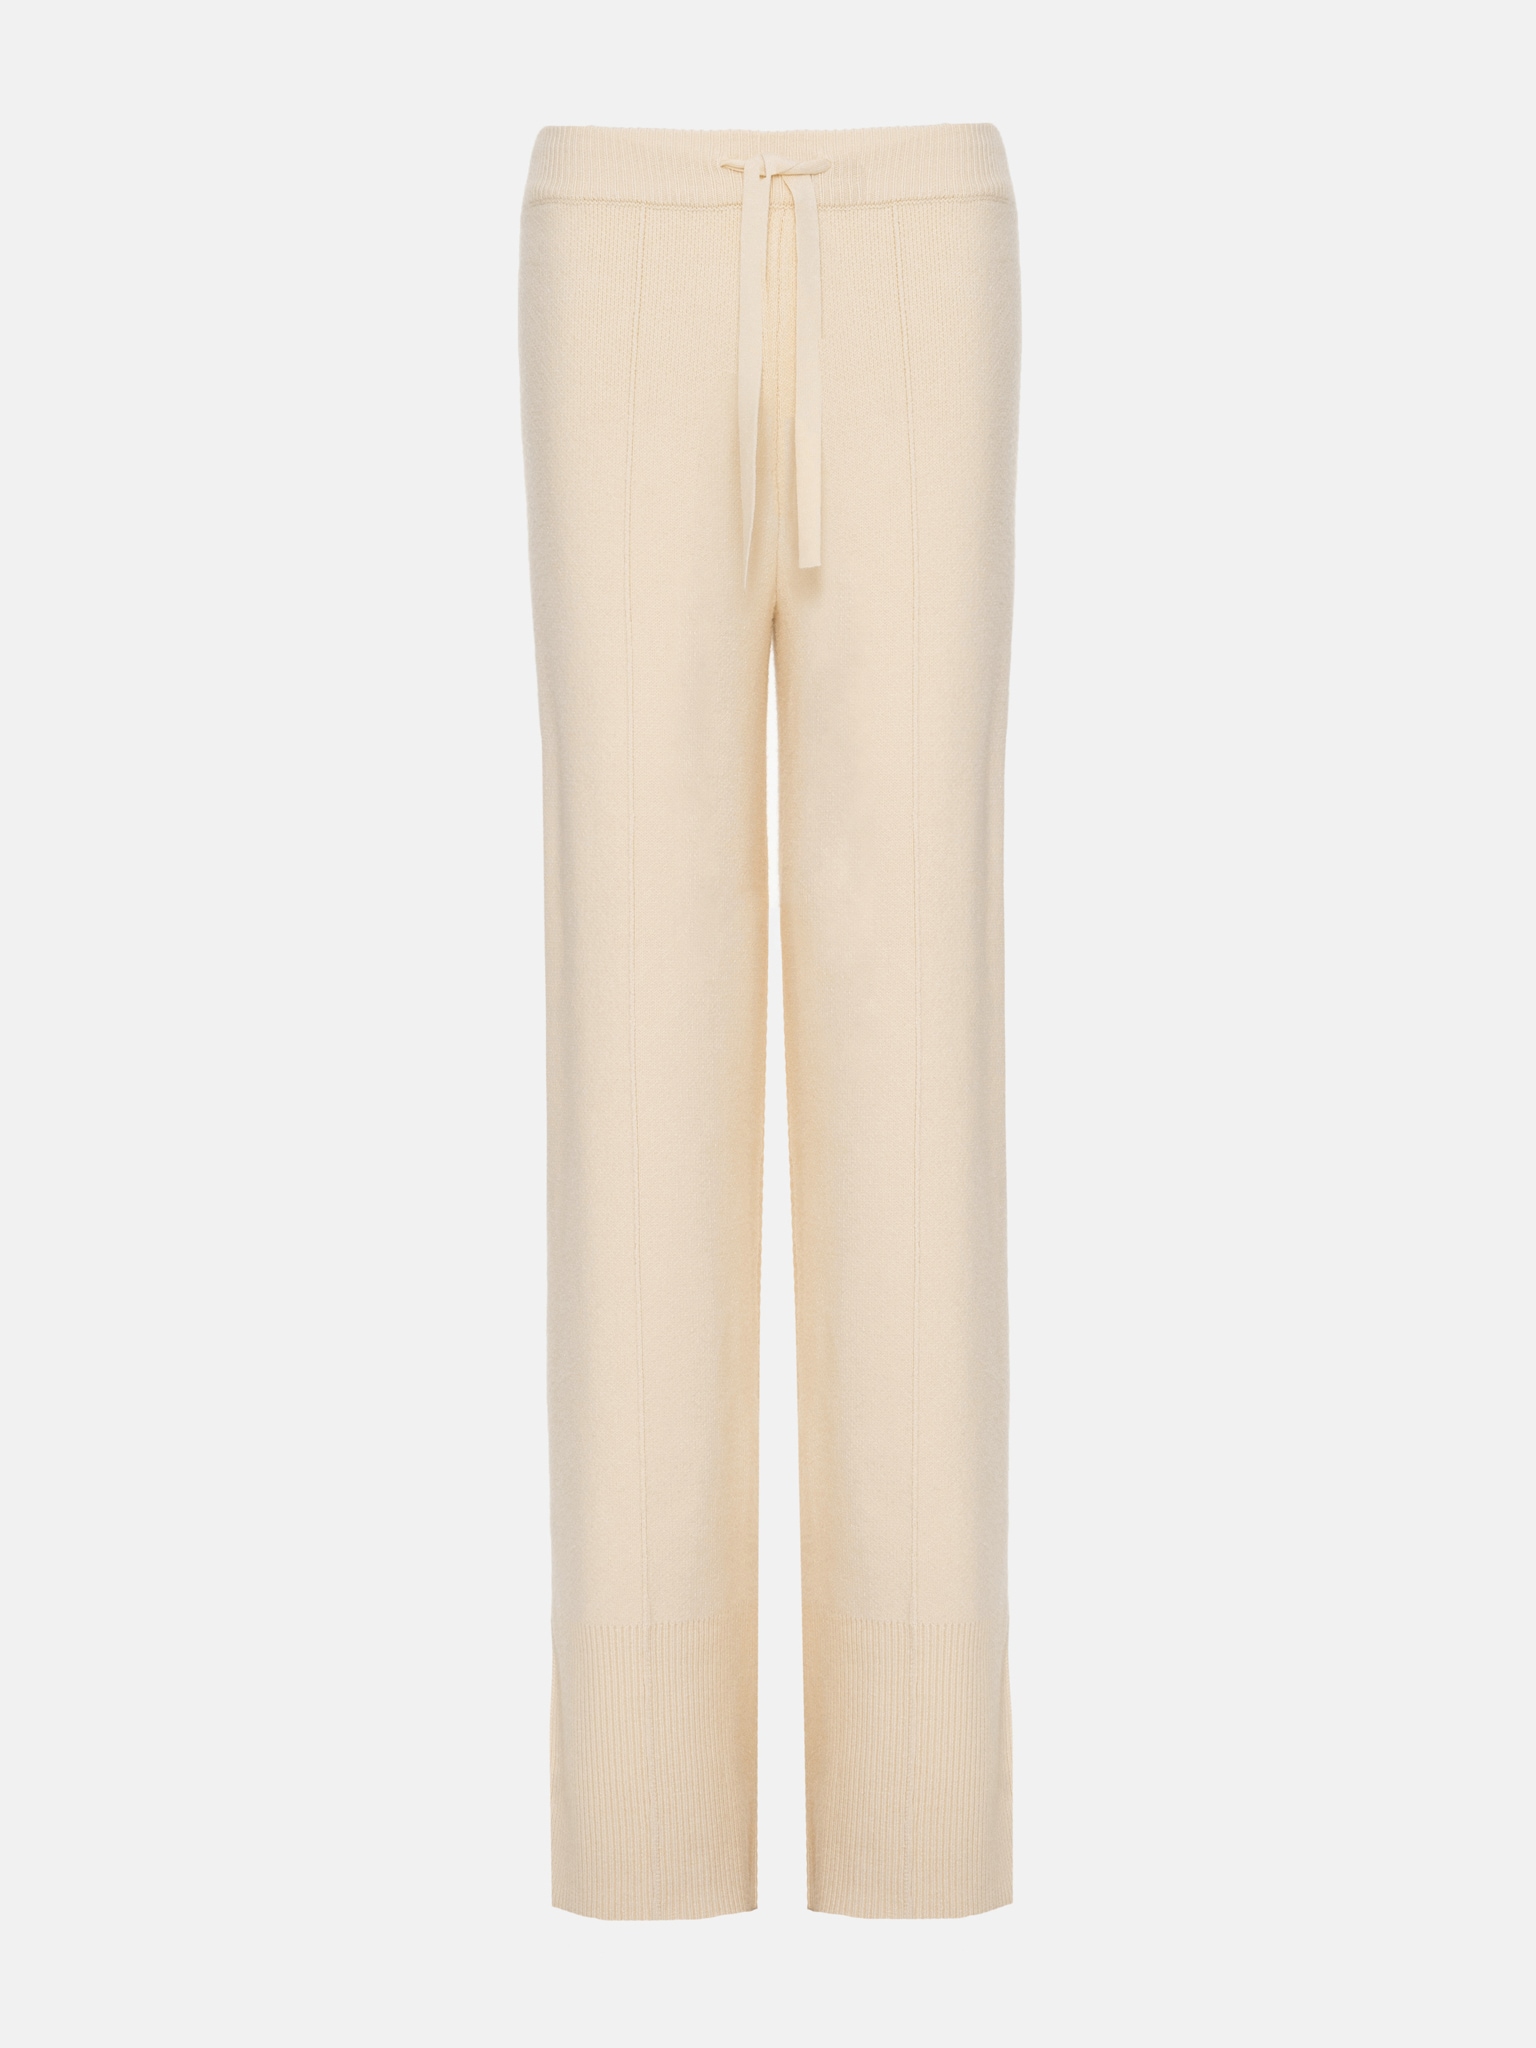 Трикотажные брюки с завязкой на талии и разрезами